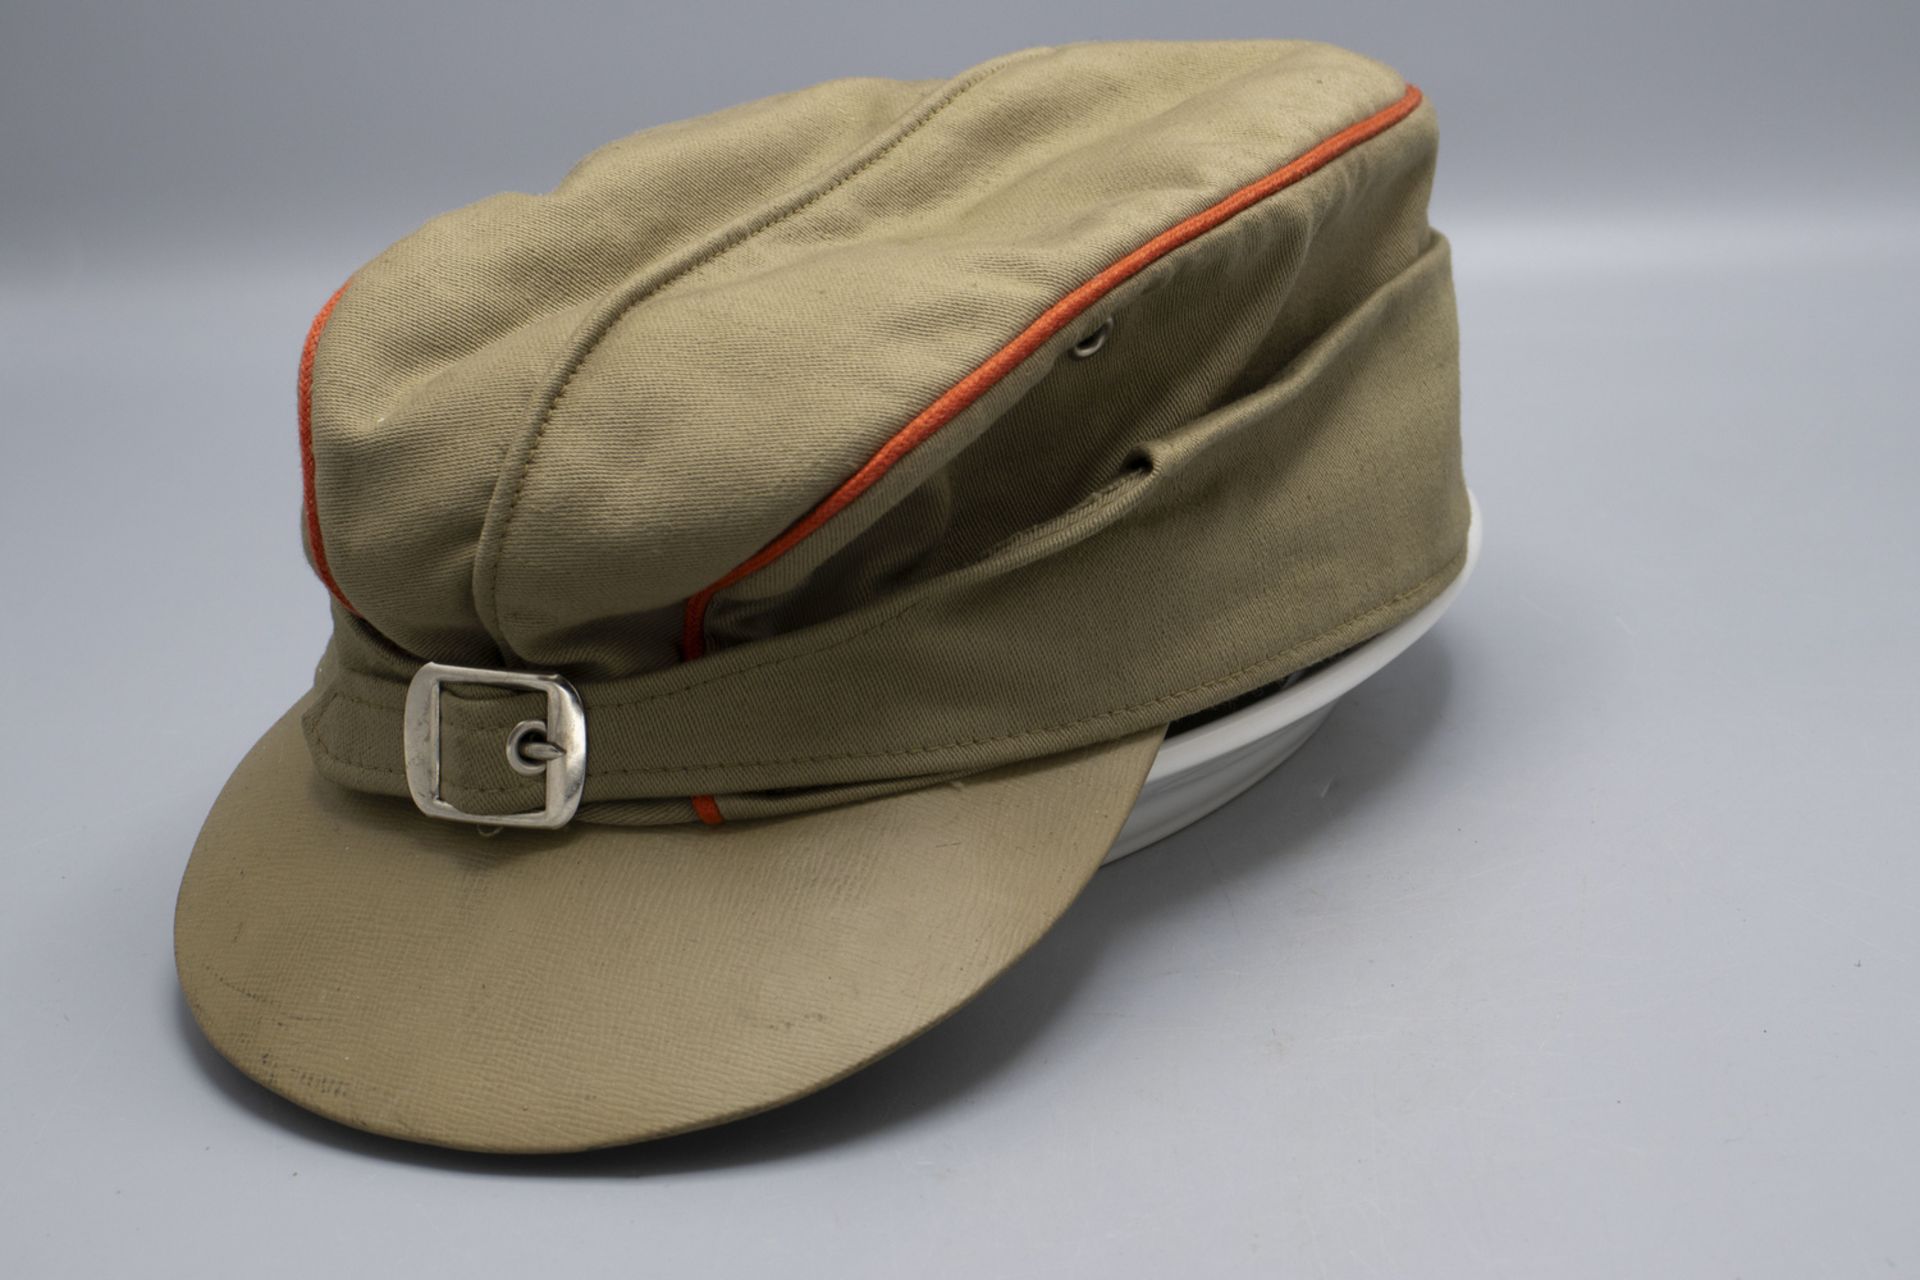 Schirmmütze / A peaked cap, Bundeswehr